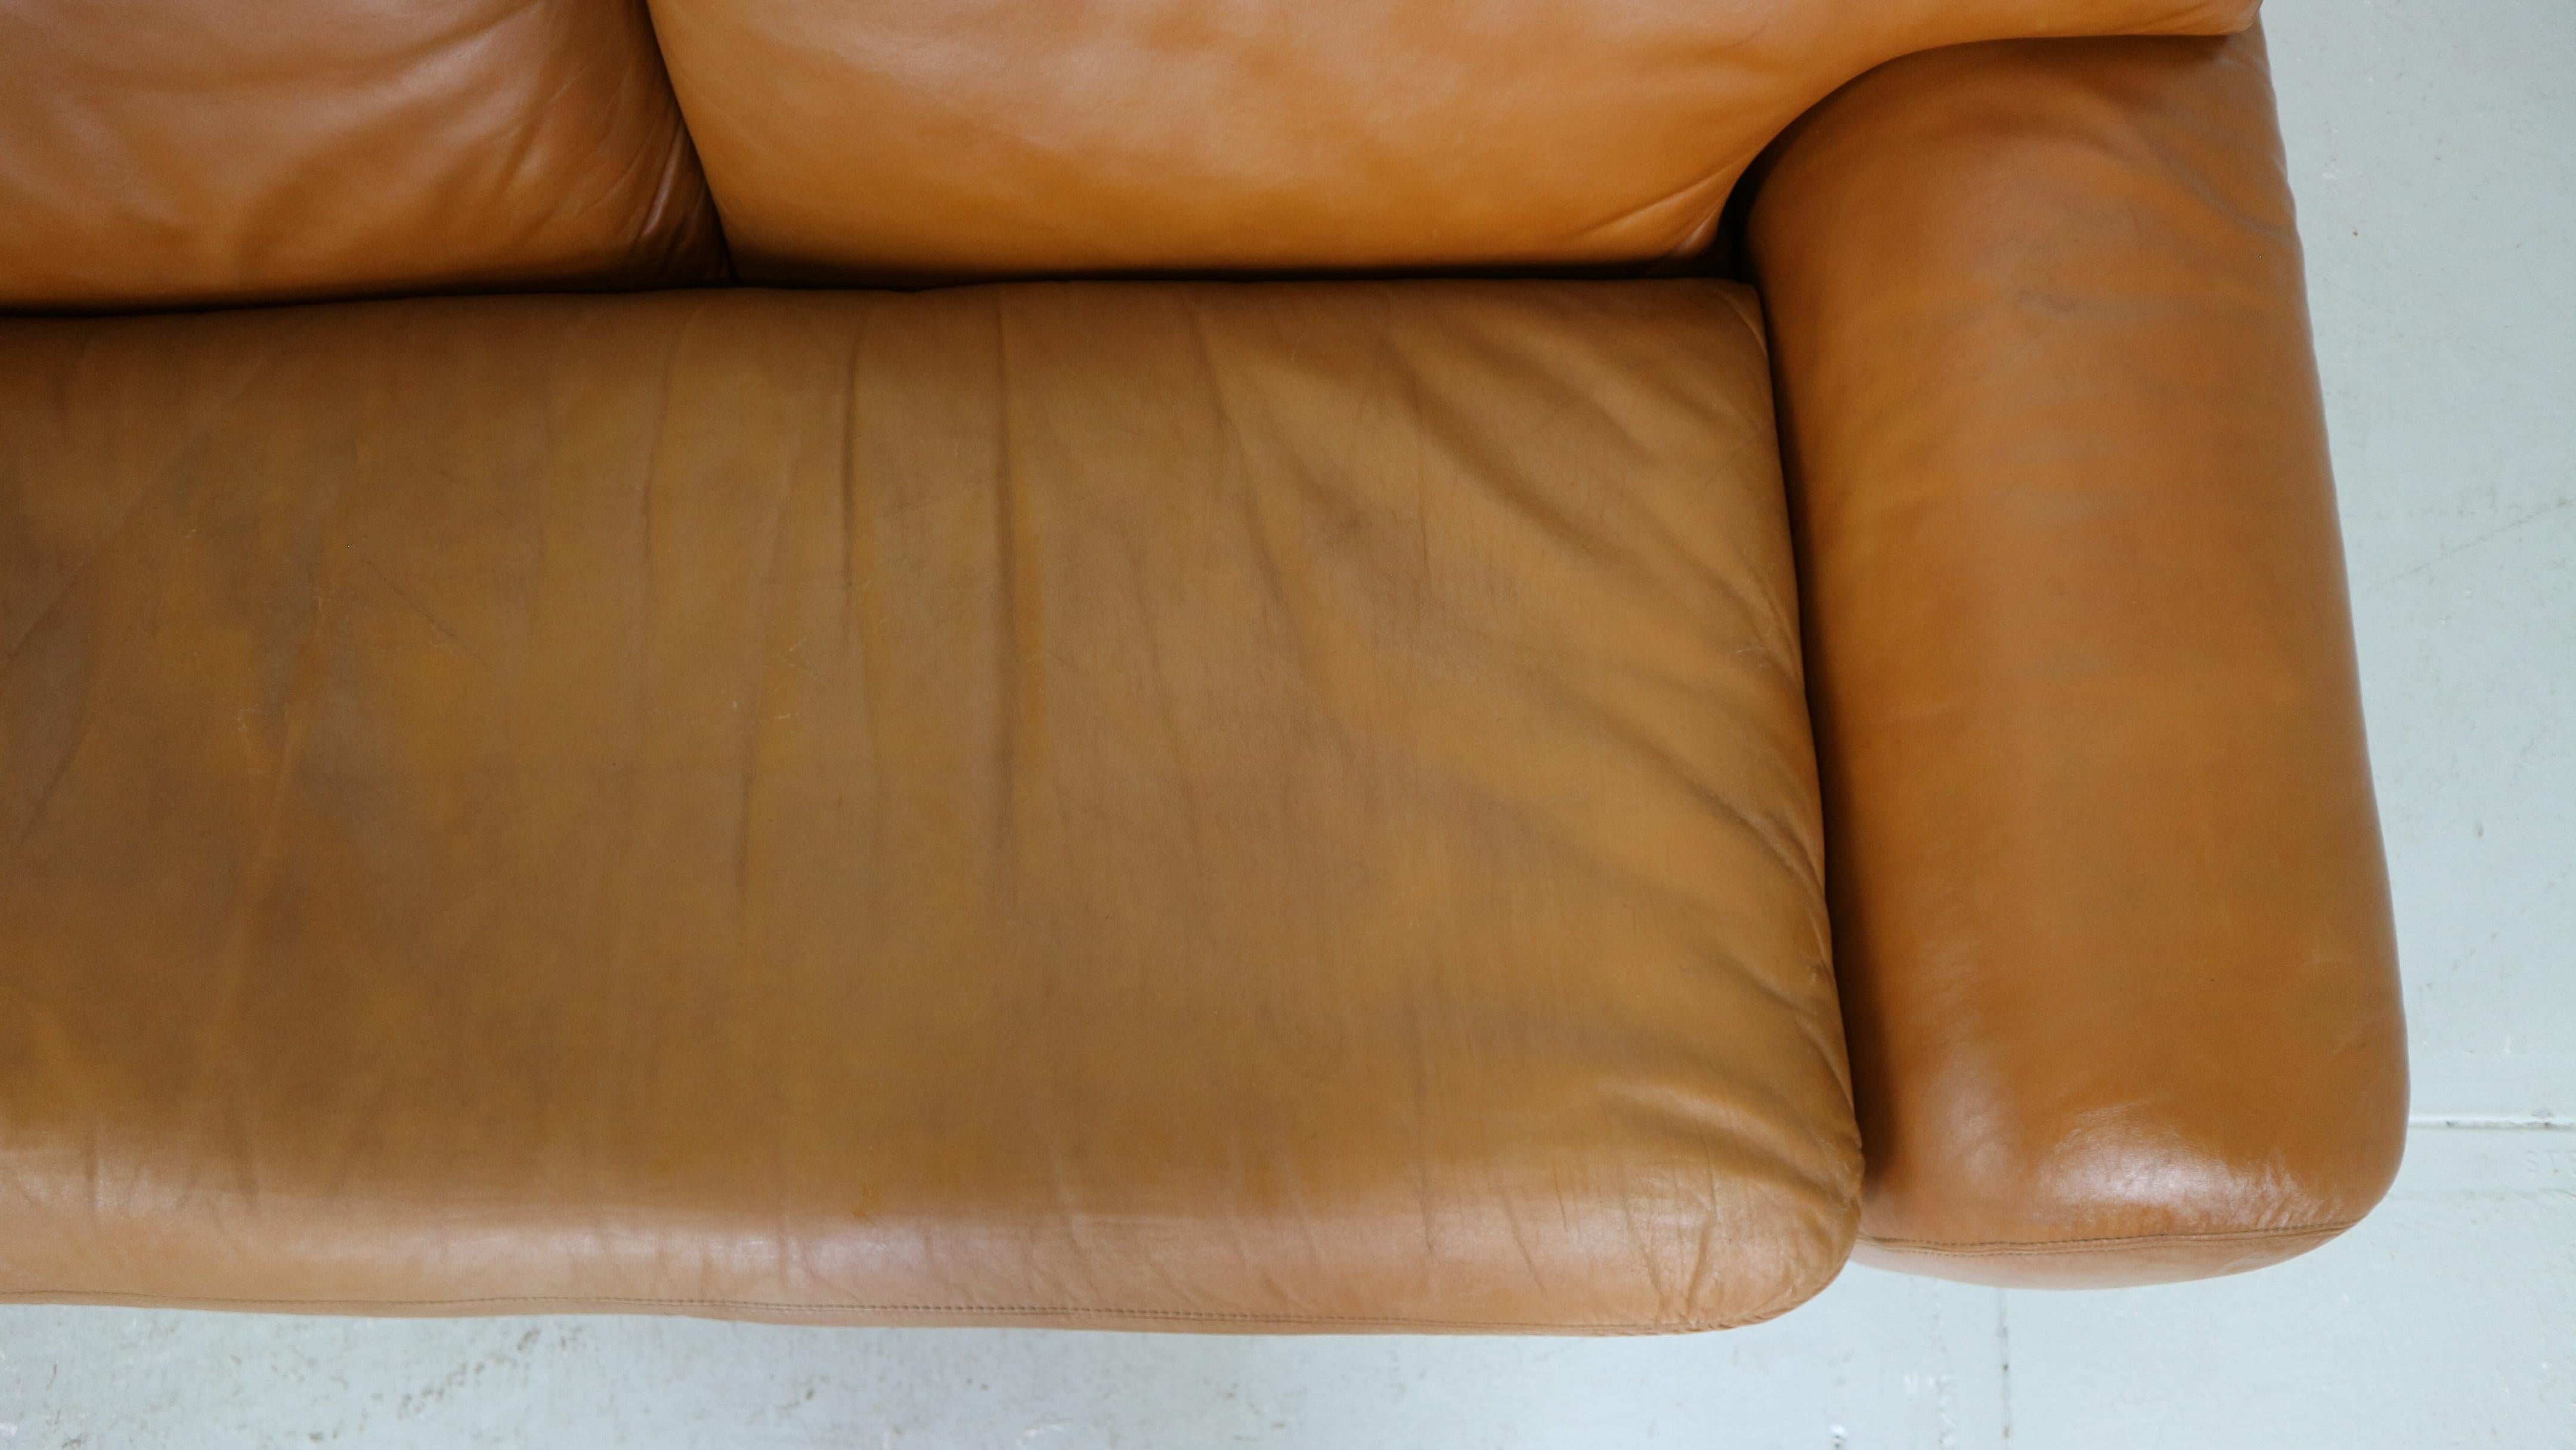 Cini Boeri Cognac Leather 2 Seater 